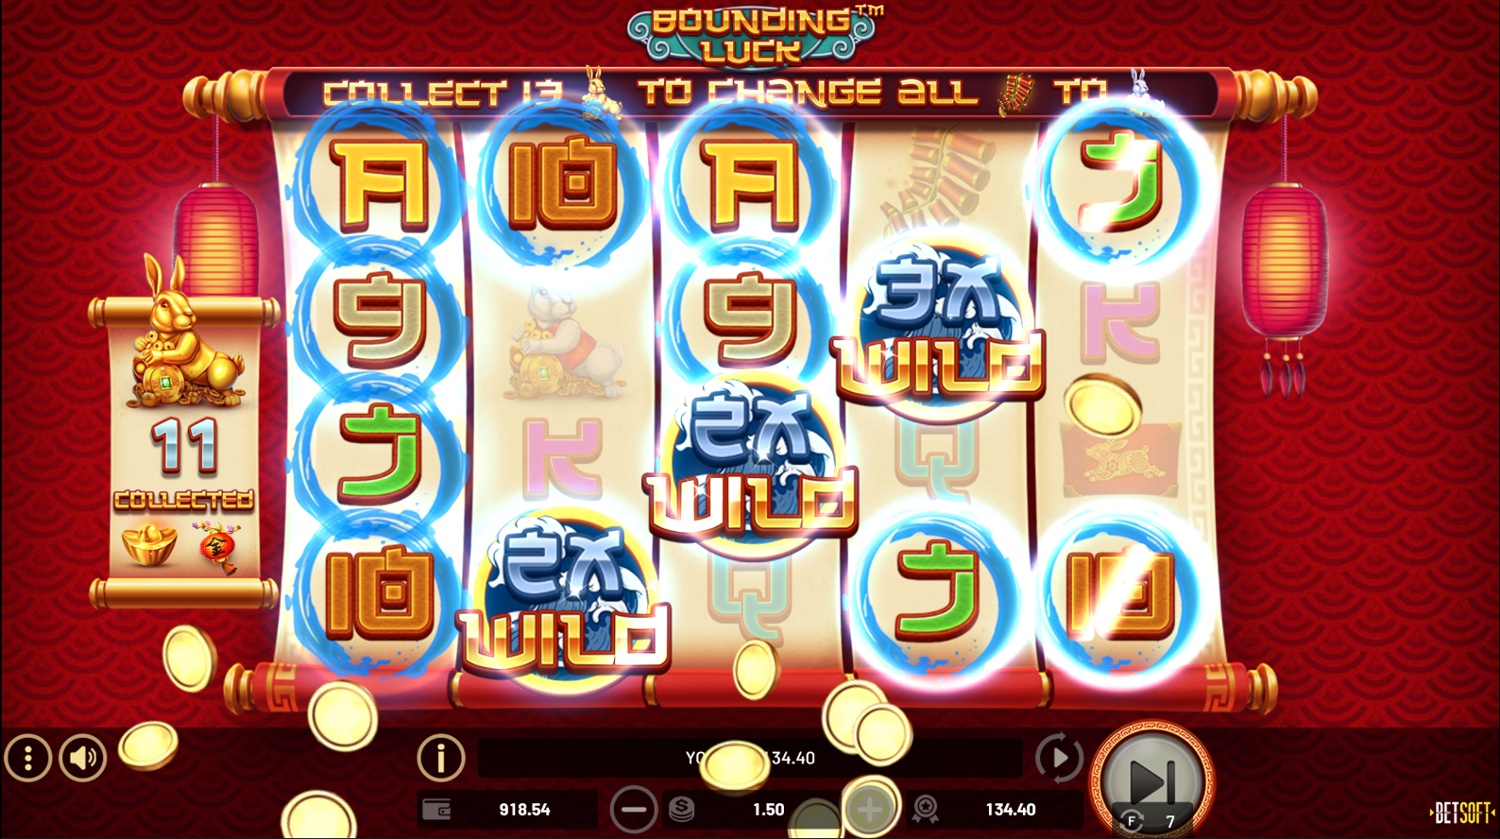 Screenshot Bounding Luck 2 